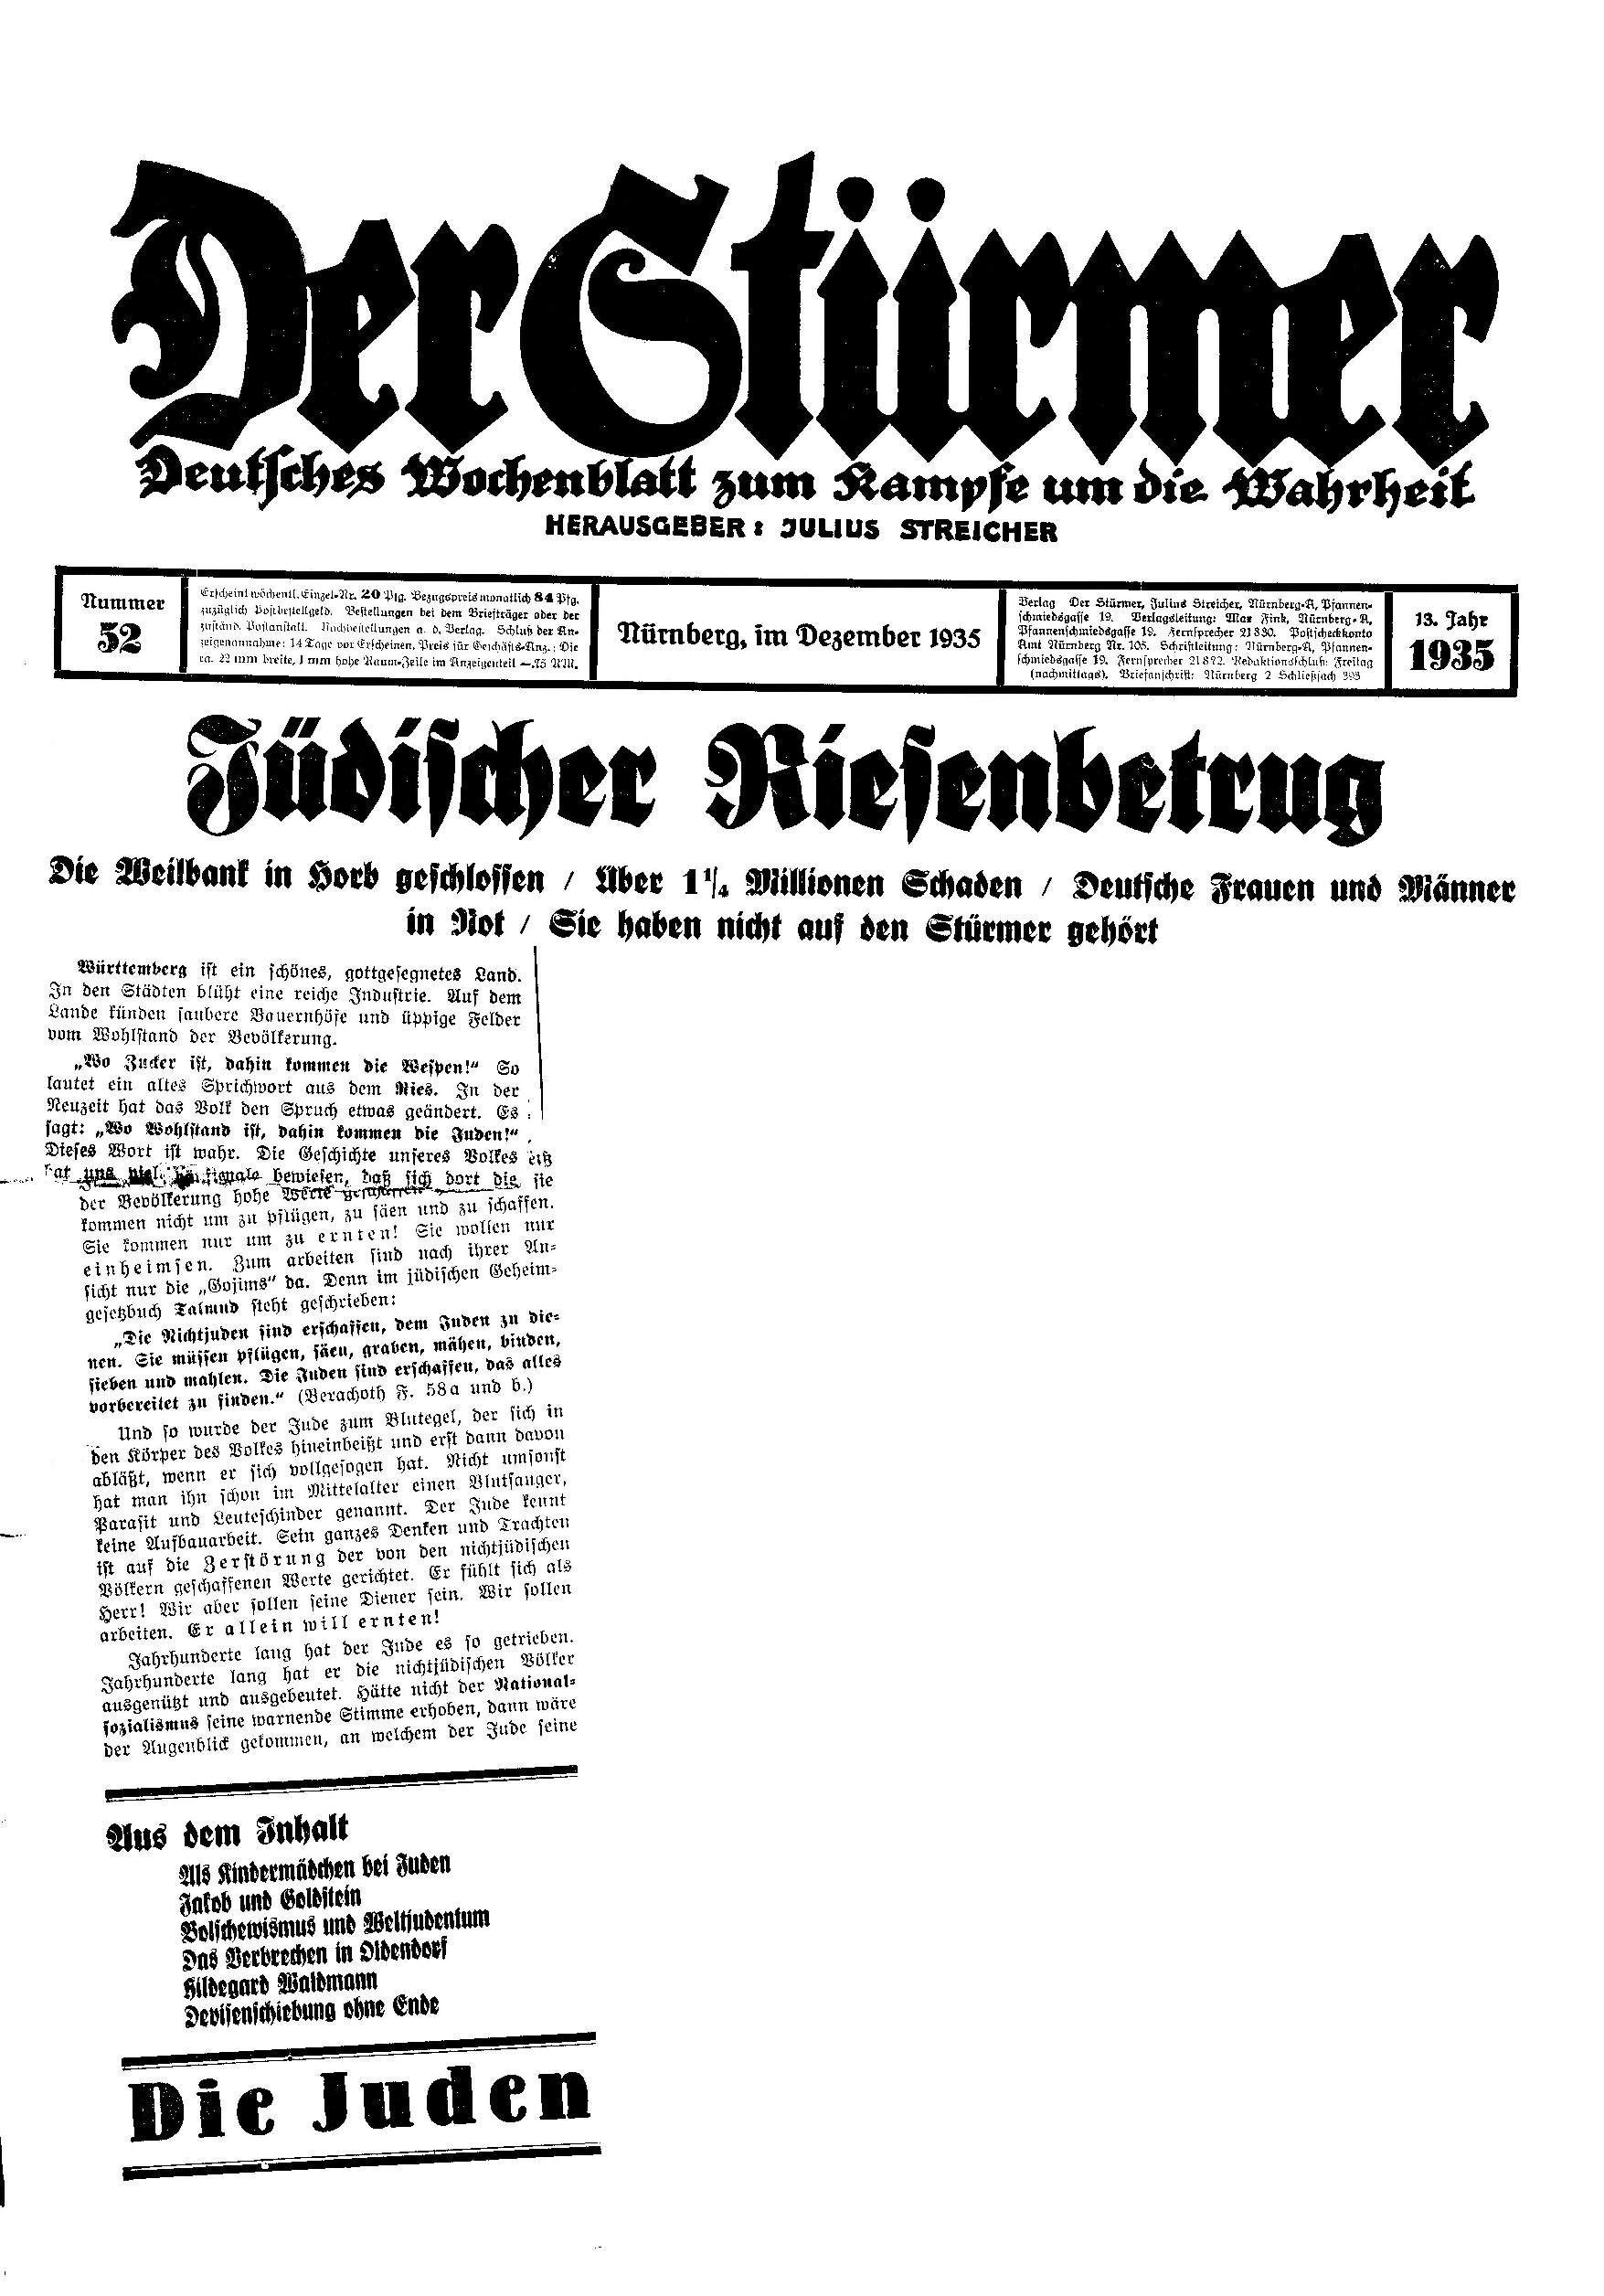 Der Stürmer - 1935 Nr. 52 - Jüdischer Riesenbetrug